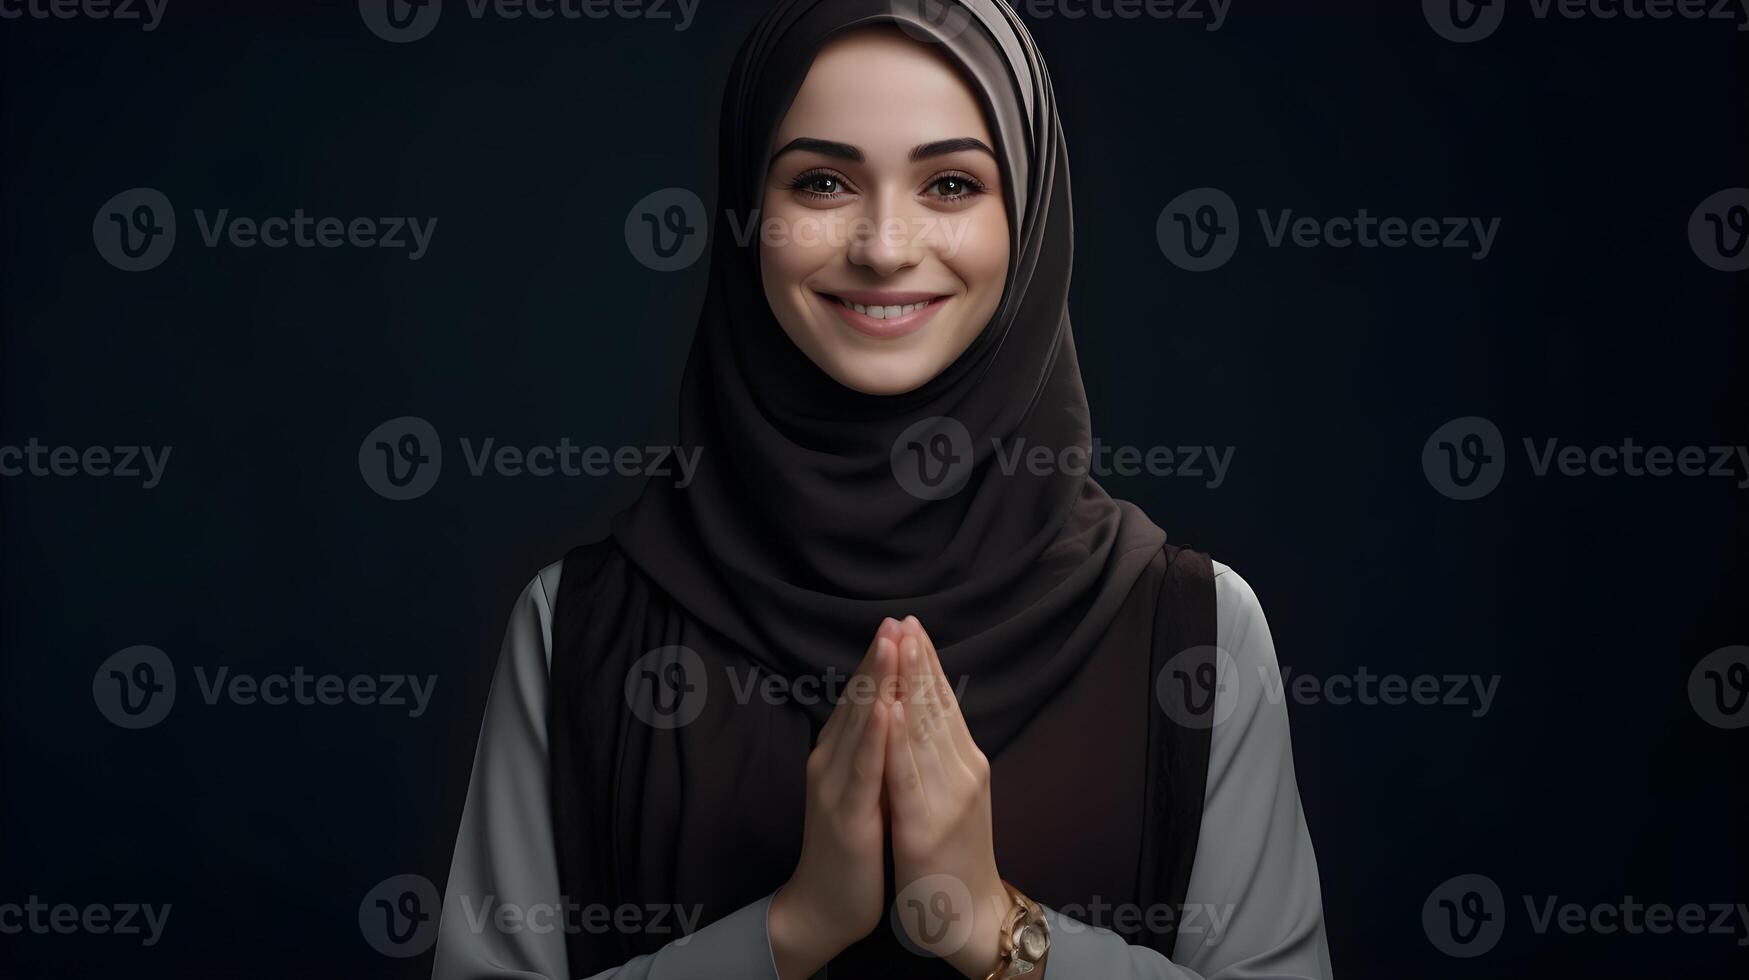 europeo mujer vistiendo bufanda es Orando y sonriente en negro antecedentes foto